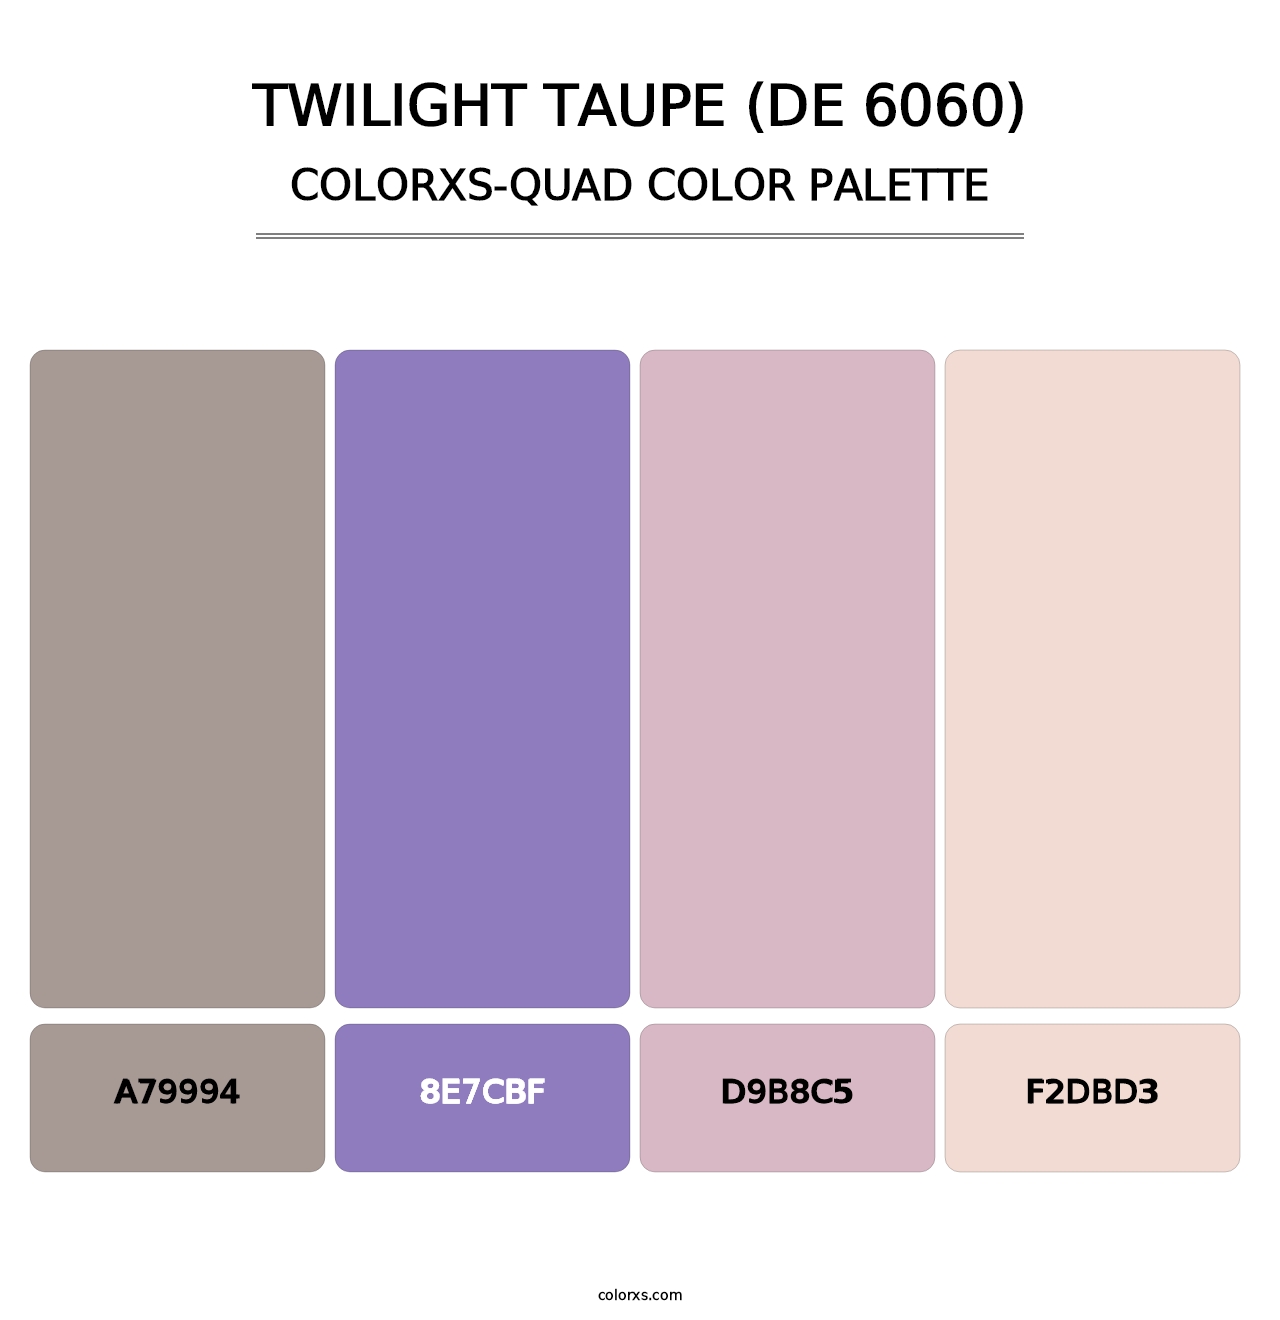 Twilight Taupe (DE 6060) - Colorxs Quad Palette